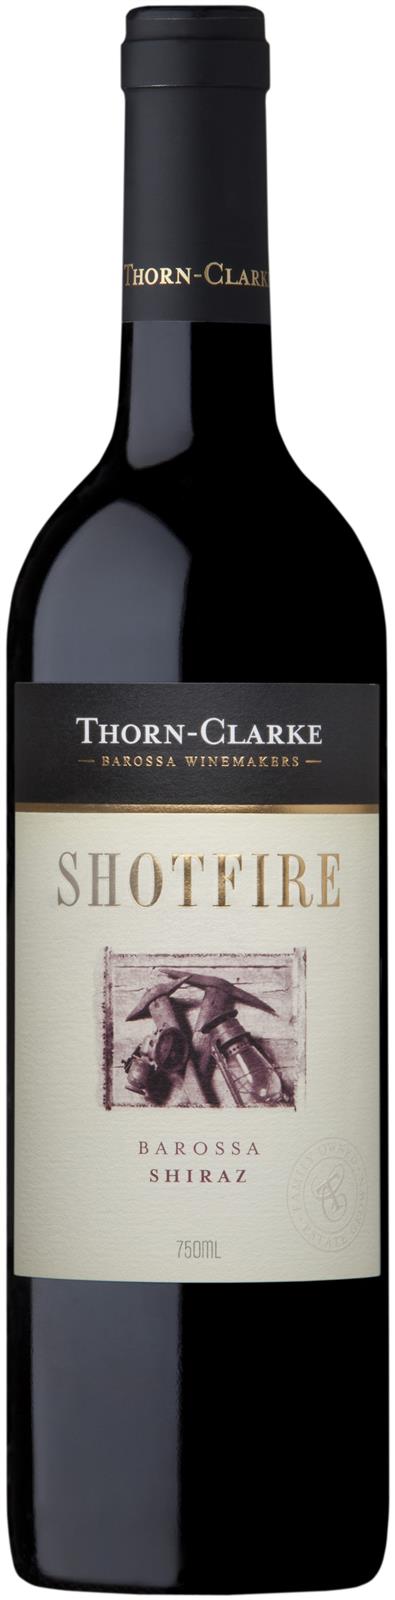 Thorn-Clarke Shotfire Shiraz 2017 (Australia)